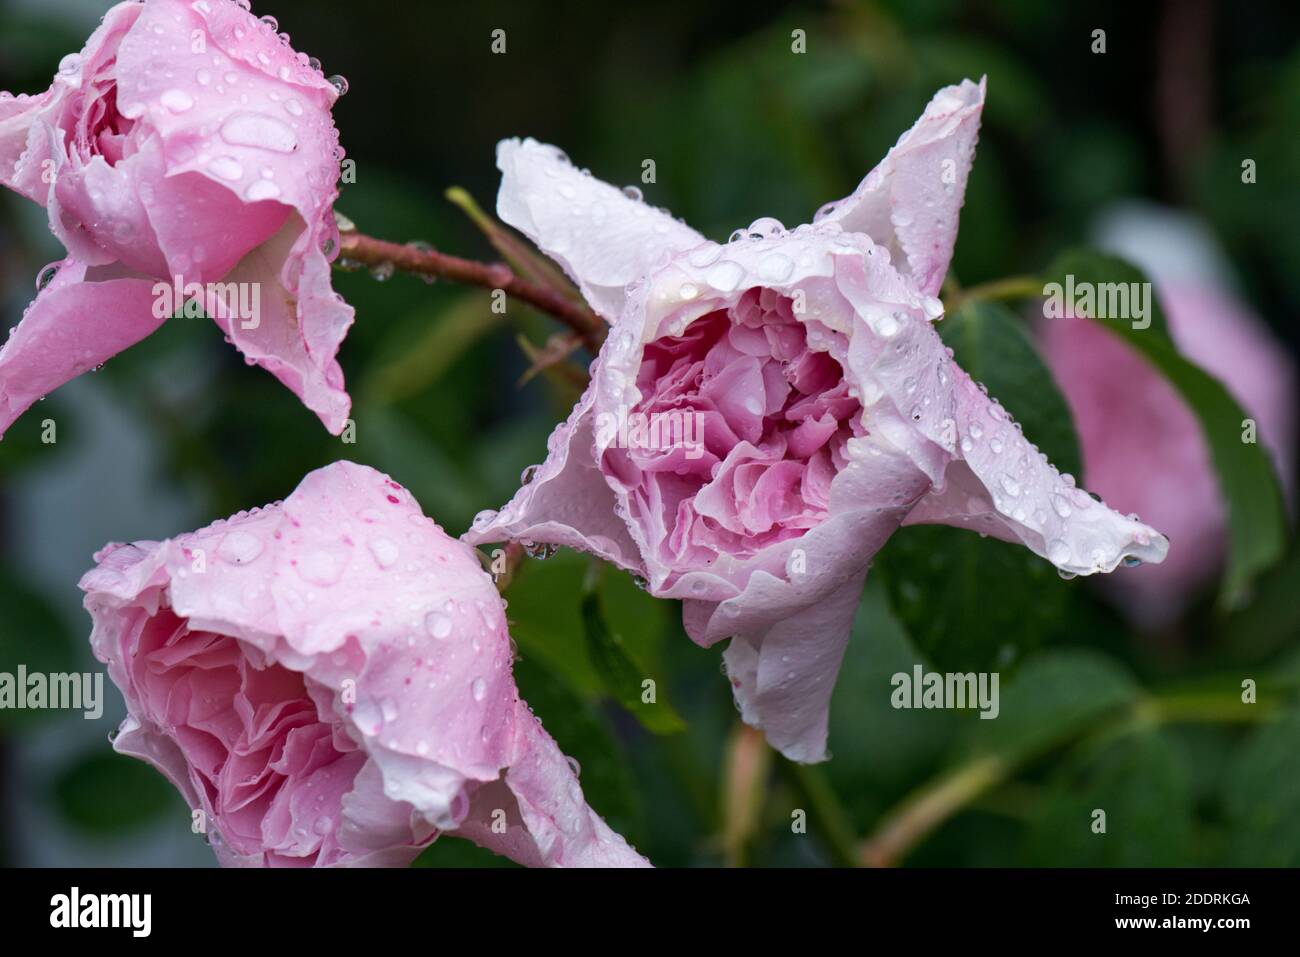 Rosa rosa (Rosa sp.) fiori ricoperti di goccioline di pioggia che mostrano i segni precoci e avanzanti di muffa grigia (Botrytis cinerea) spotting, giugno Foto Stock